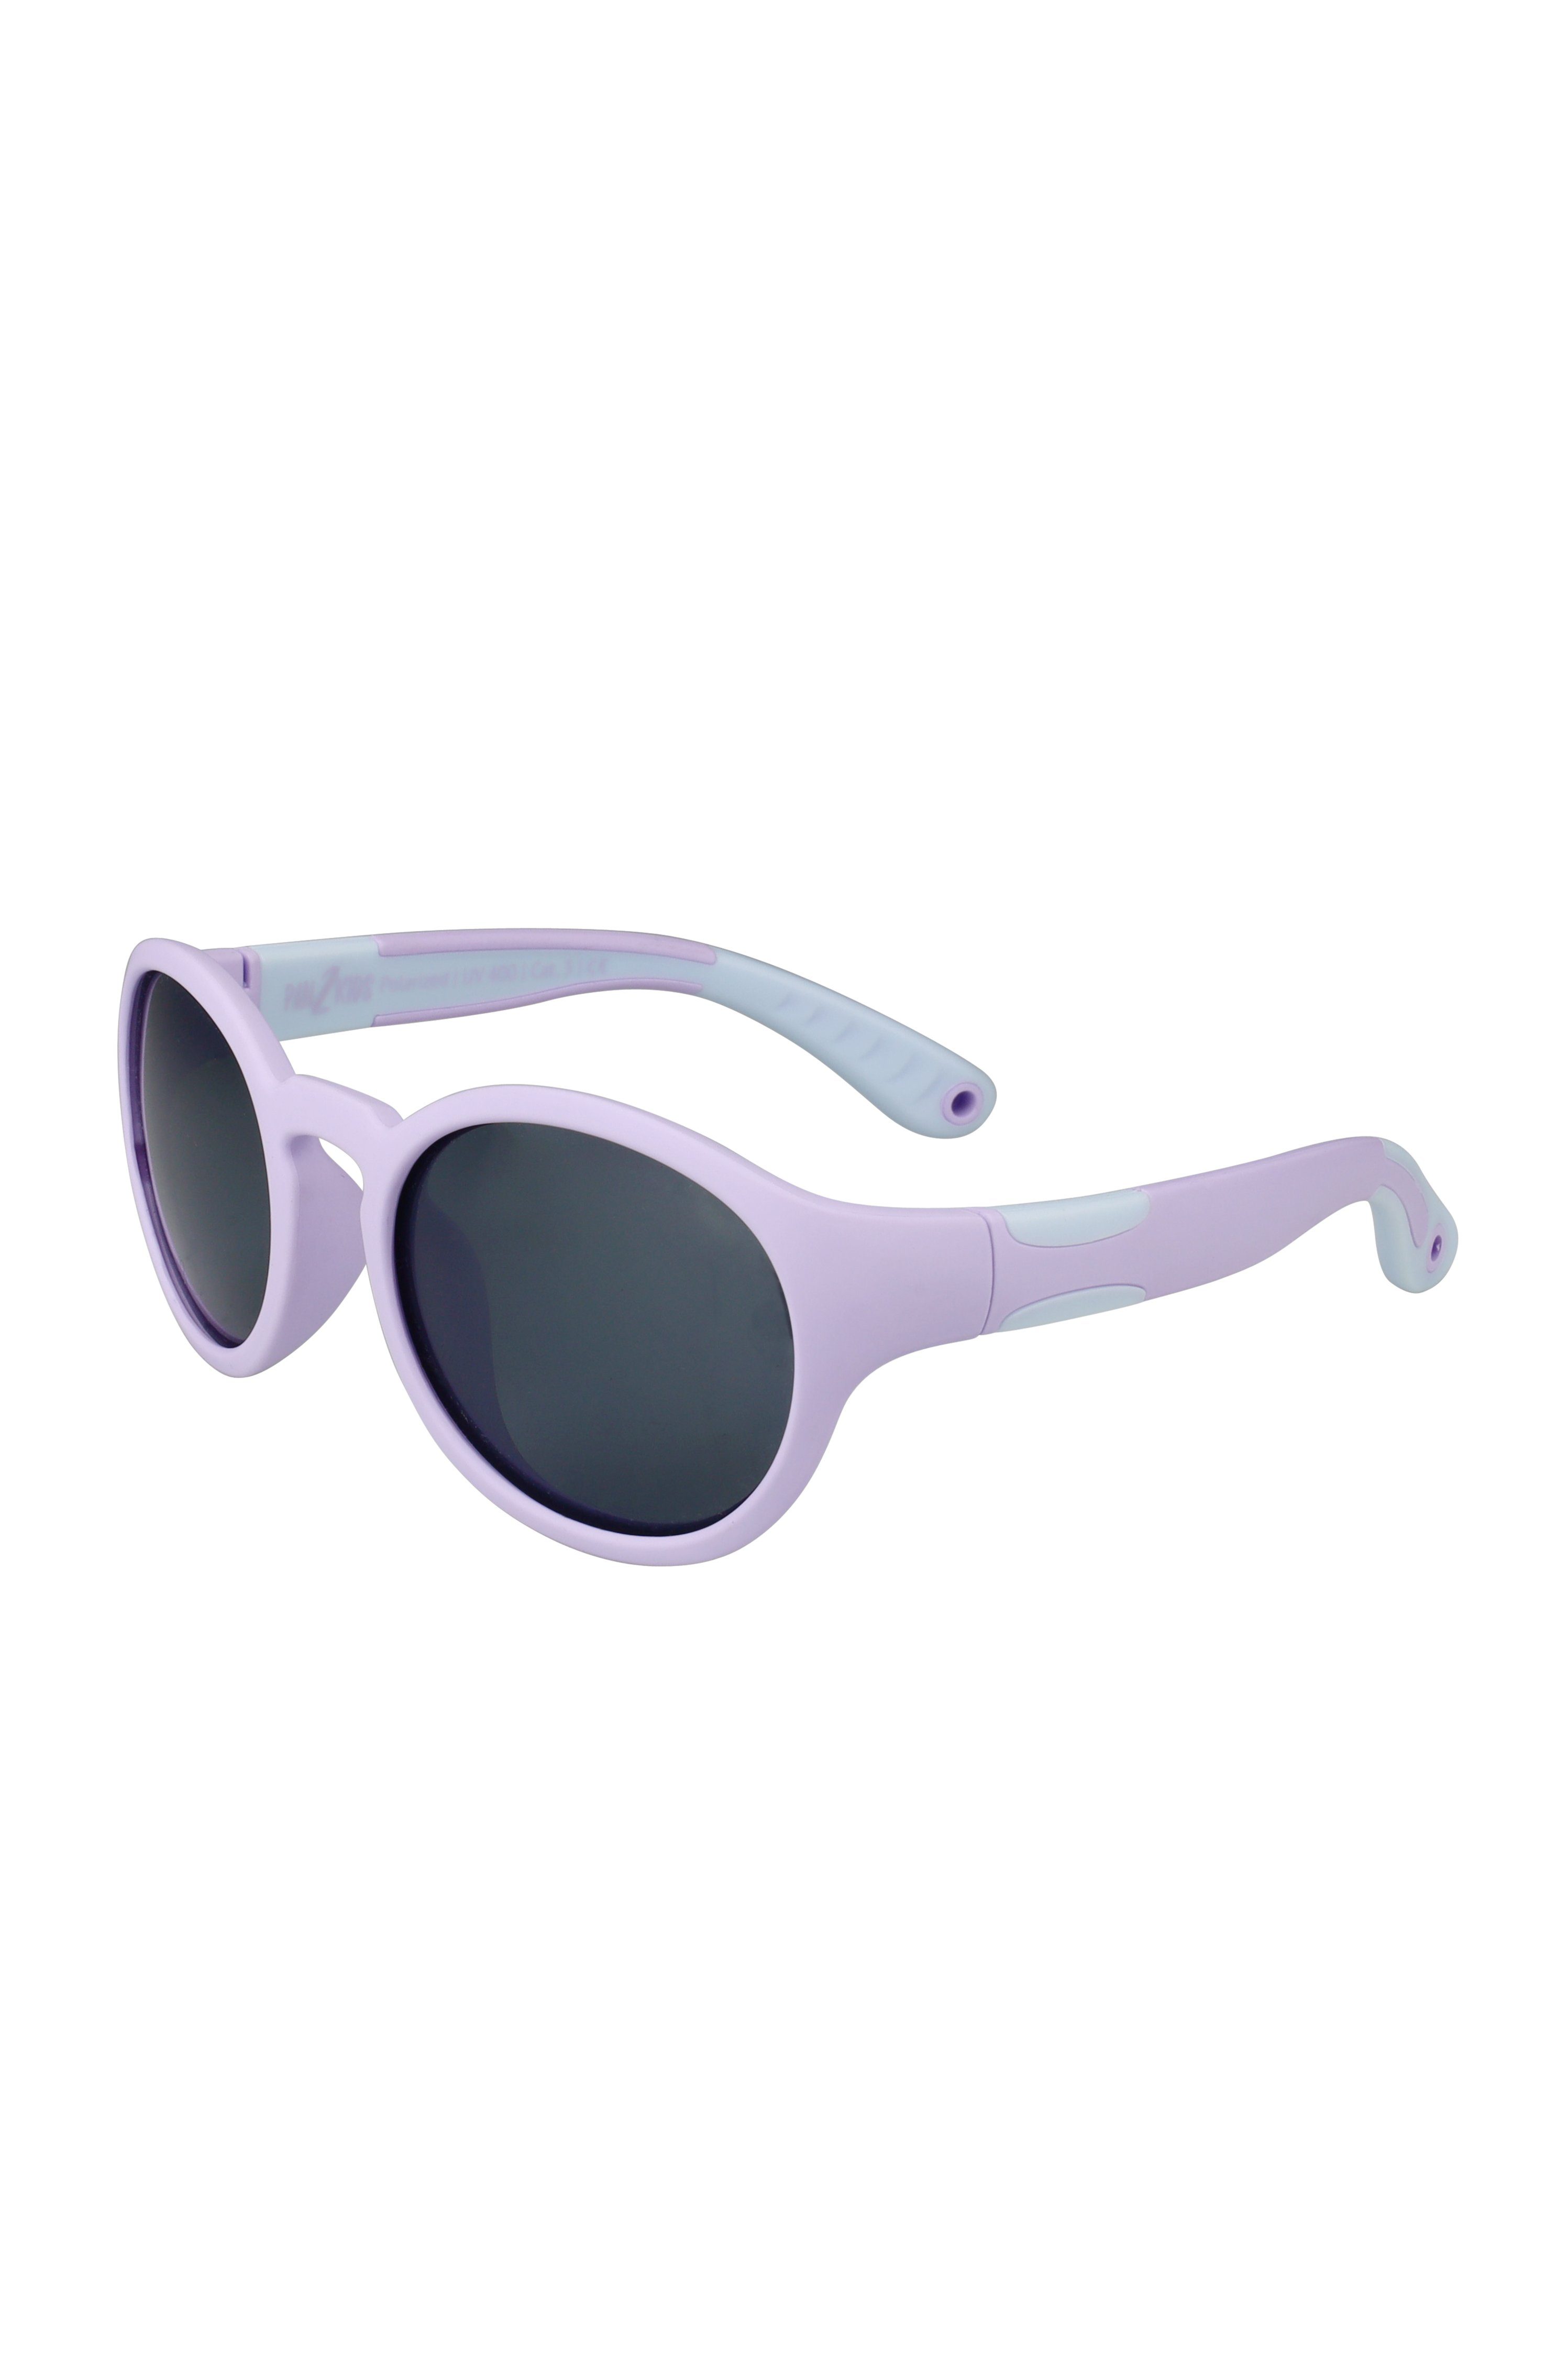 ActiveSol SUNGLASSES Sonnenbrille Kinder Pan2Kids, 2-5 Jahre, Panto-Design UV-Schutz, polarisiert